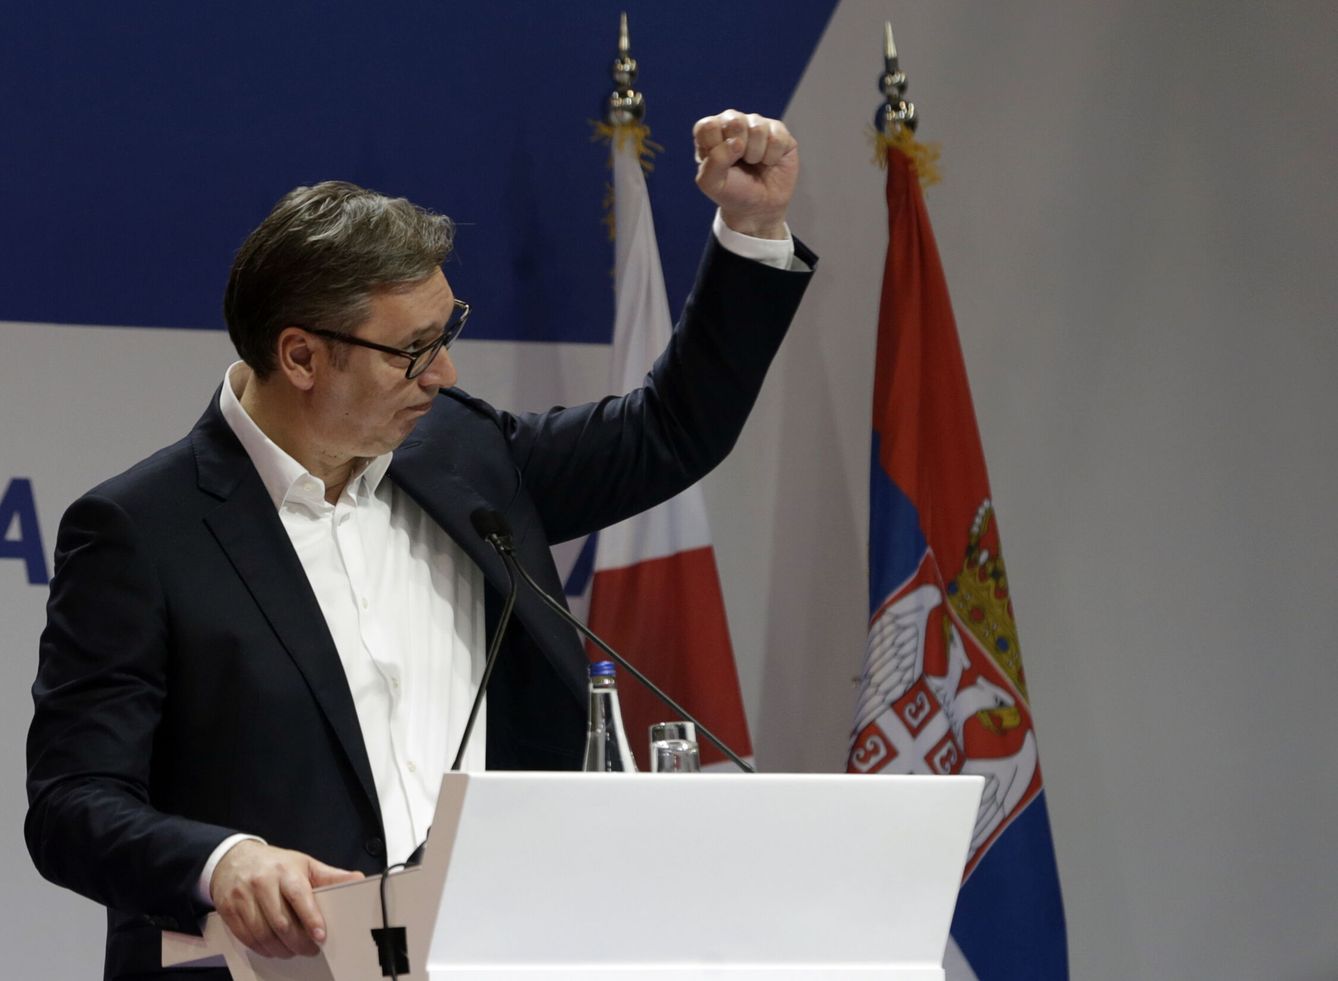 Vucic durante un evento de la campaña electoral serbia. (Reuters)